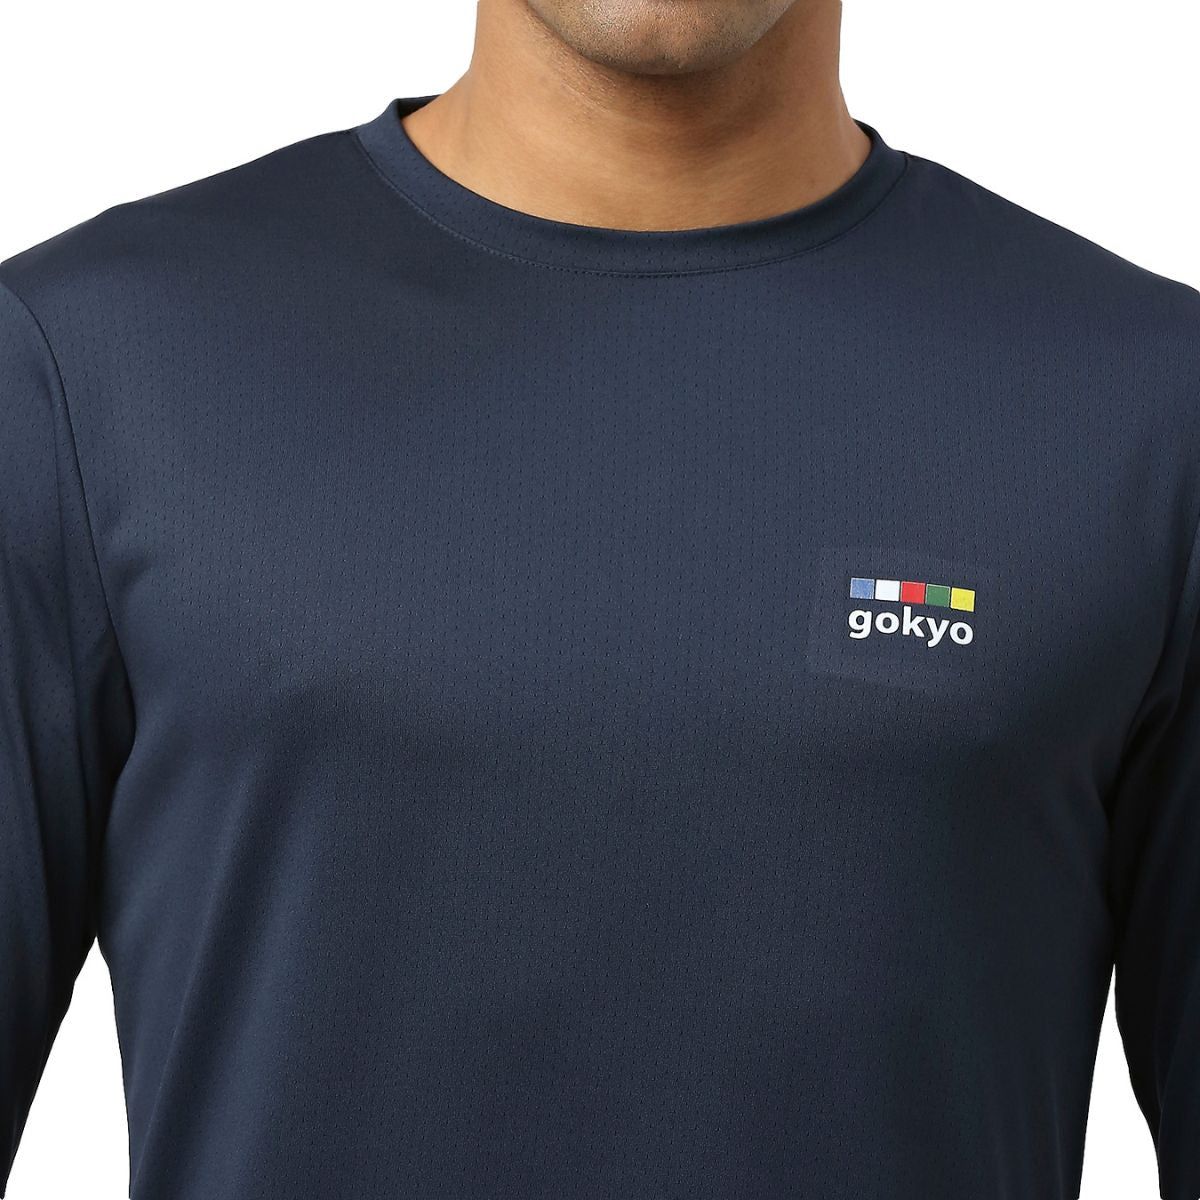 Trekking T-Shirt - Explorer Series - Navy Blue 4